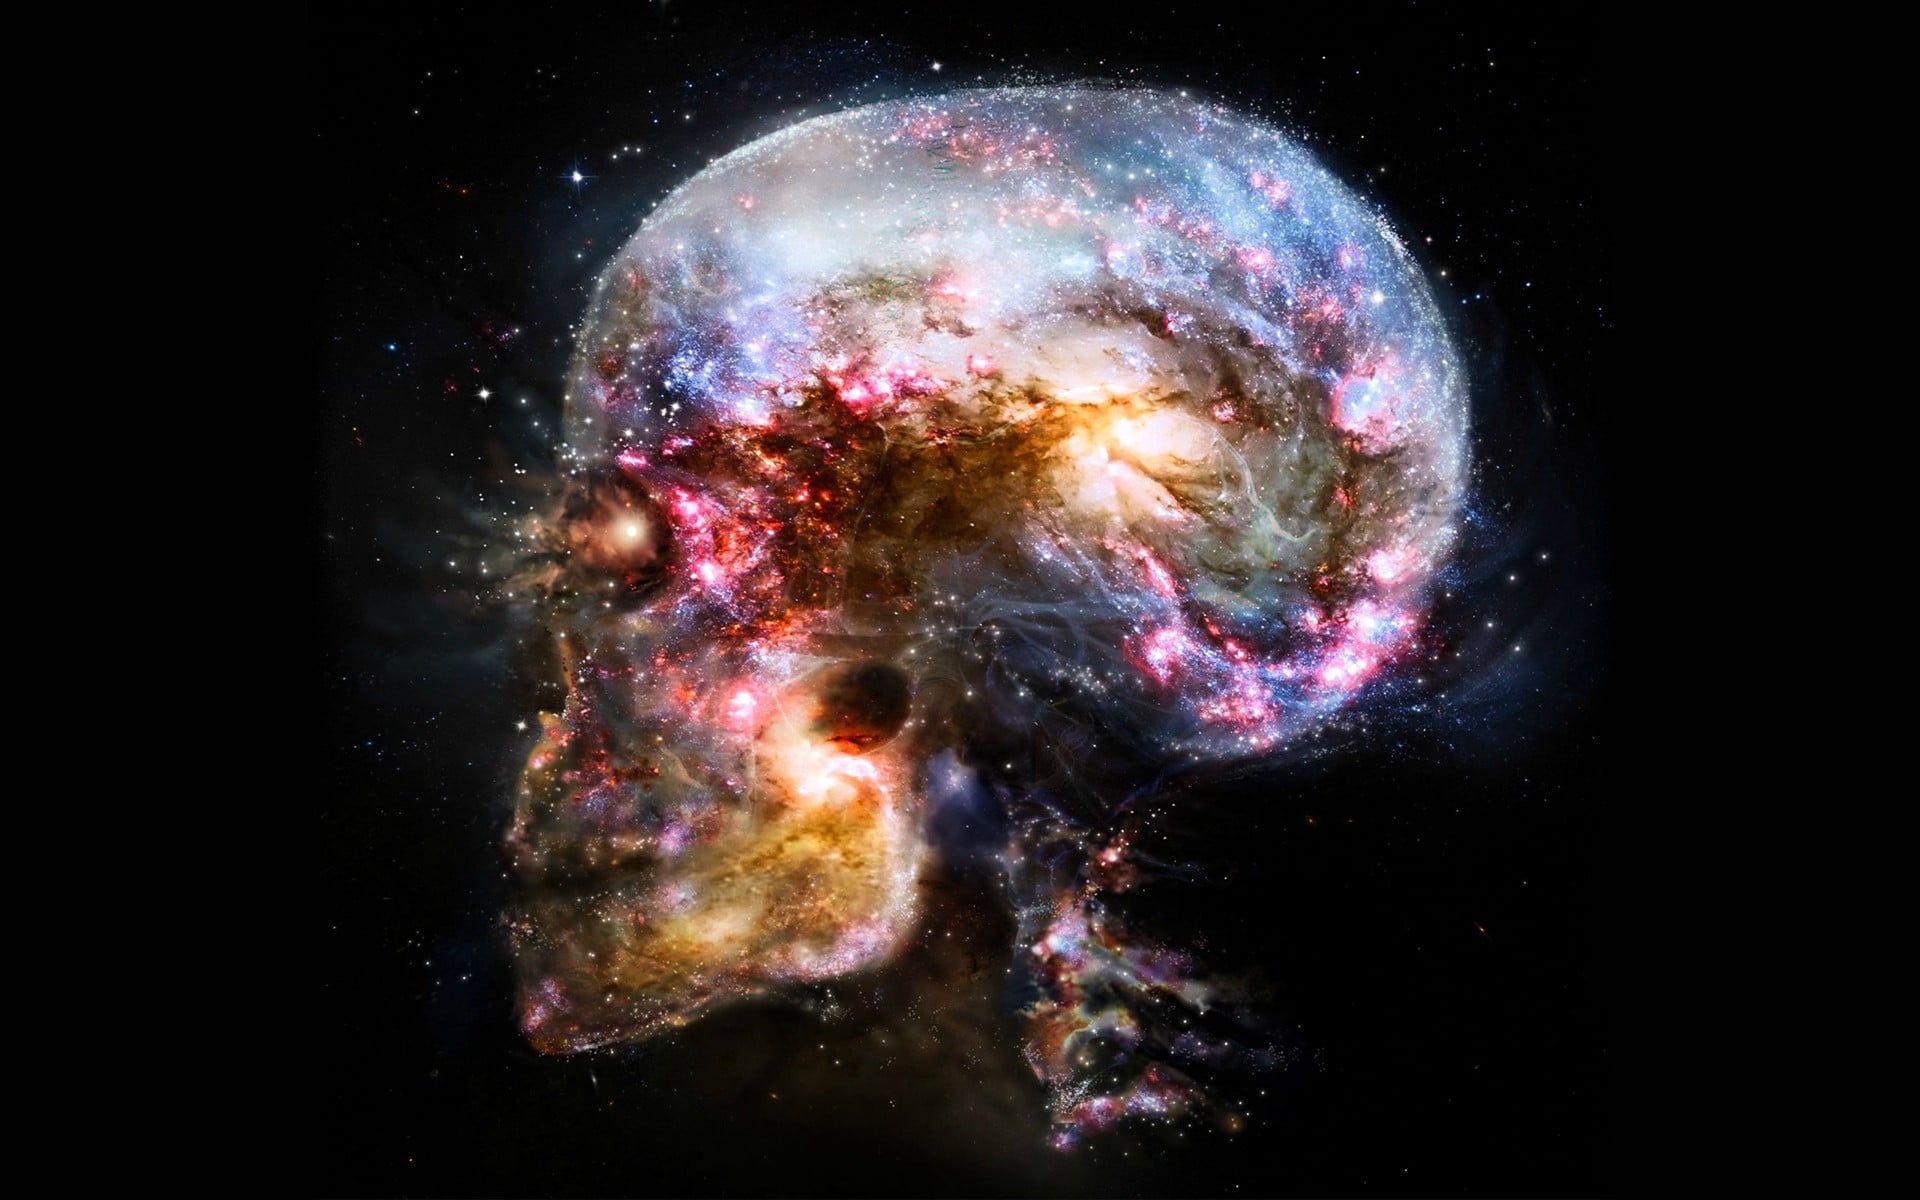 HD wallpaper: skull illustration, space, universe, abstract, brain, science. Skull illustration, Galaxy art, Nebula wallpaper